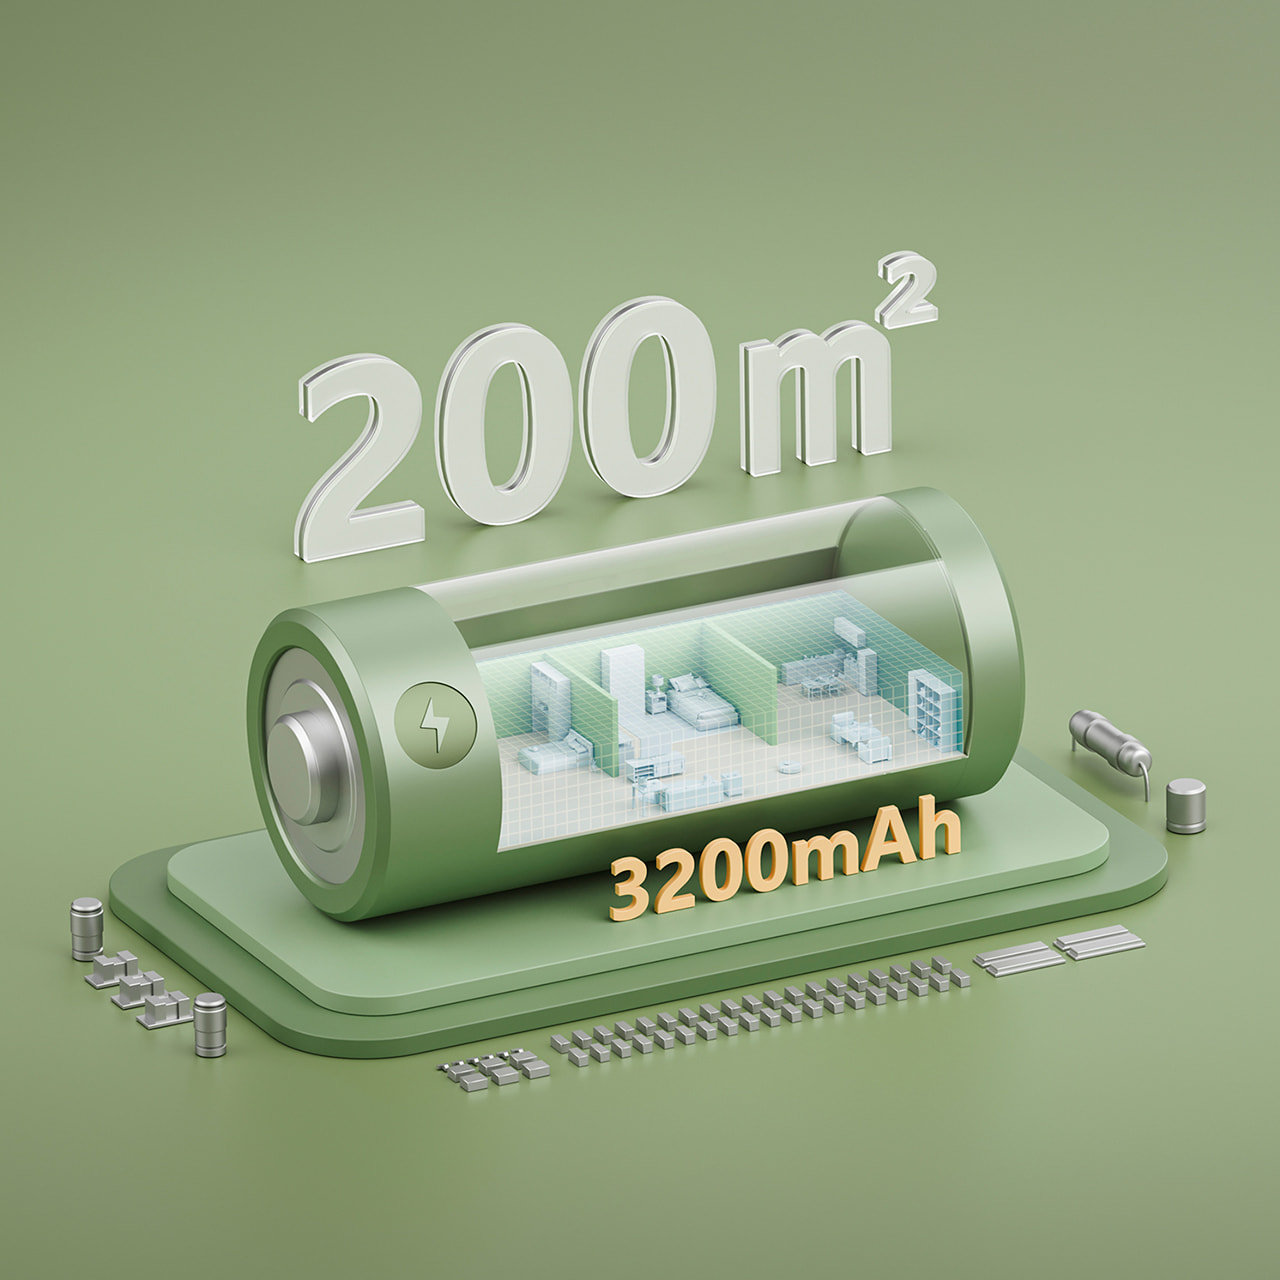 Благодаря встроенному литий-ионному аккумулятору на 3200 мАч, Dreame D9 Plus способен провести уборку на площади до 200 м